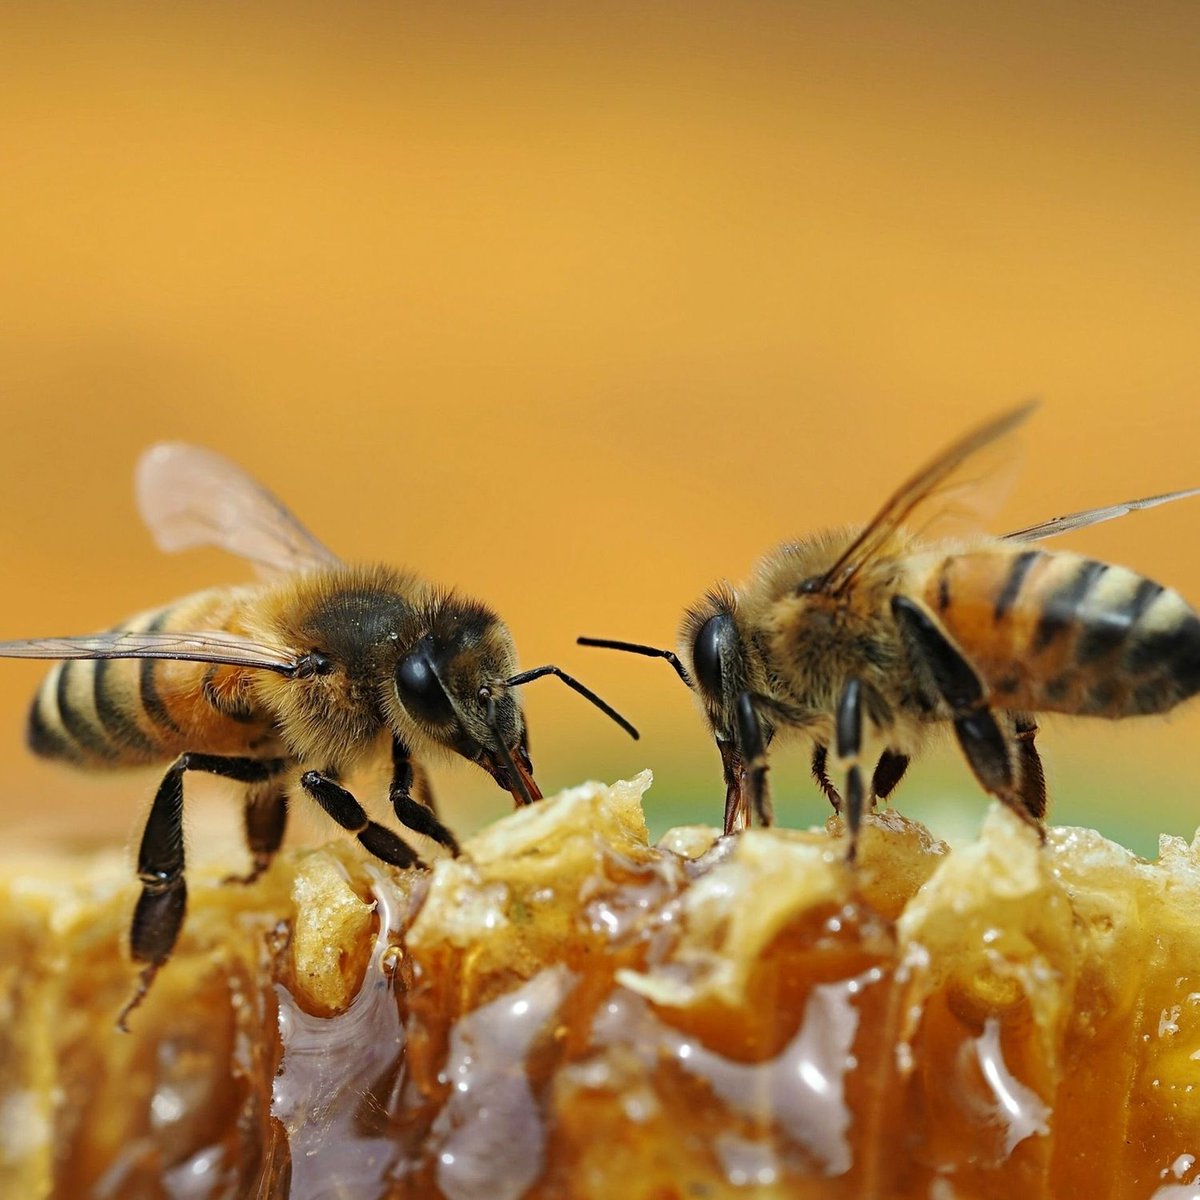 Produire 1 kg de miel est un exploit pour les abeilles 🐝 Elles parcourent collectivement environ 240.000 km lors de leurs vols de butinage. Ce voyage implique environ 40.000 abeilles visitant environ 60.000.000 de fleurs pour recueillir le nectar nécessaire à la production de